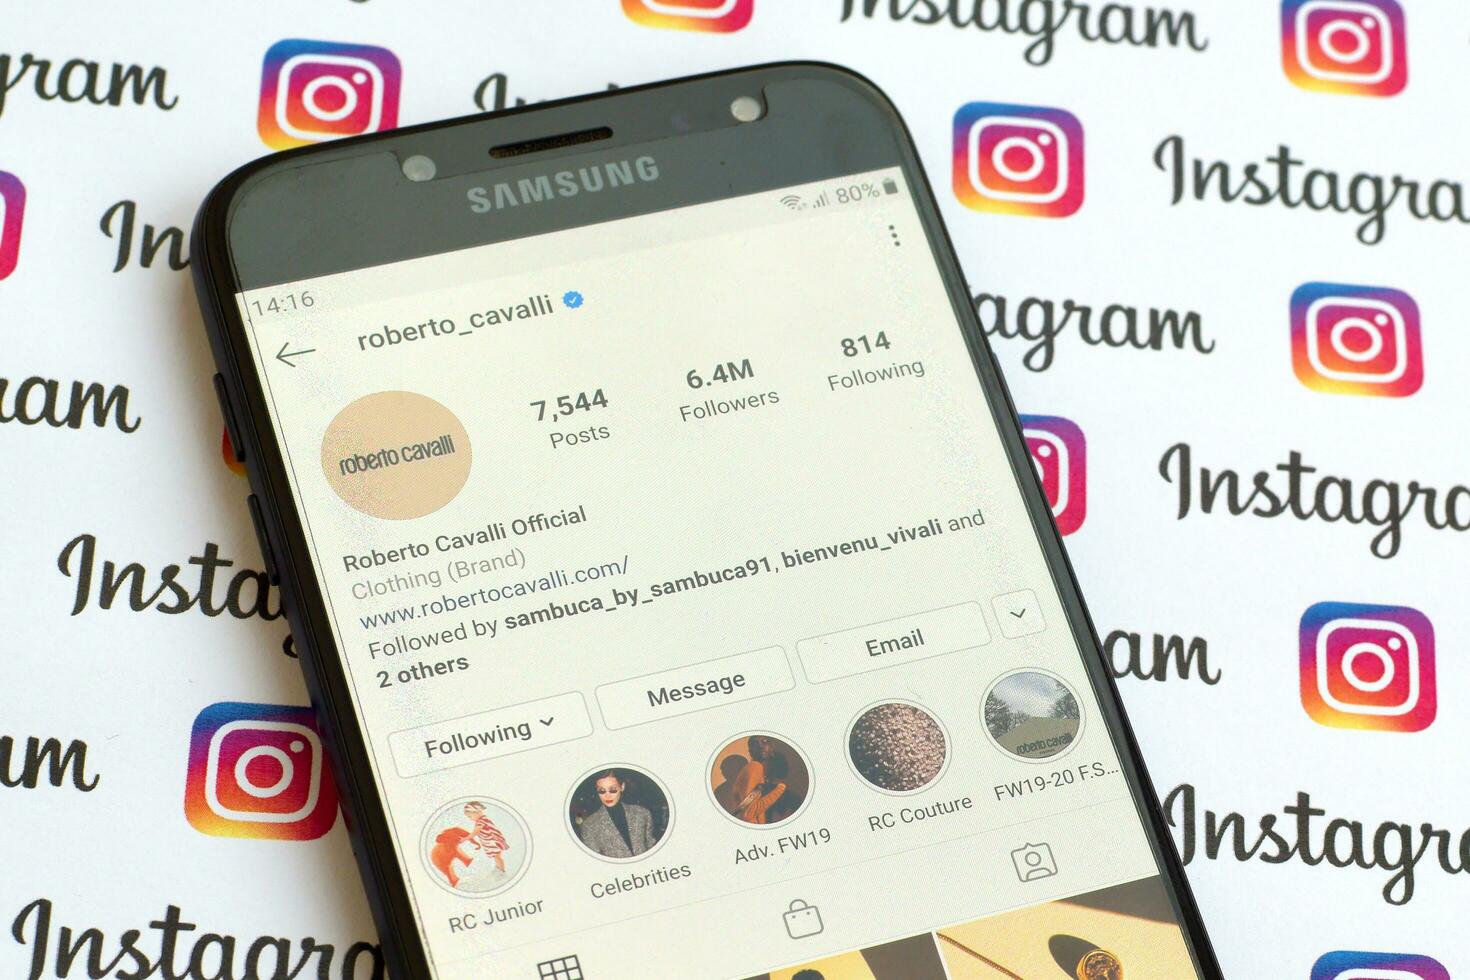 roberto cavalli officiell Instagram konto på smartphone skärm på papper Instagram baner. foto